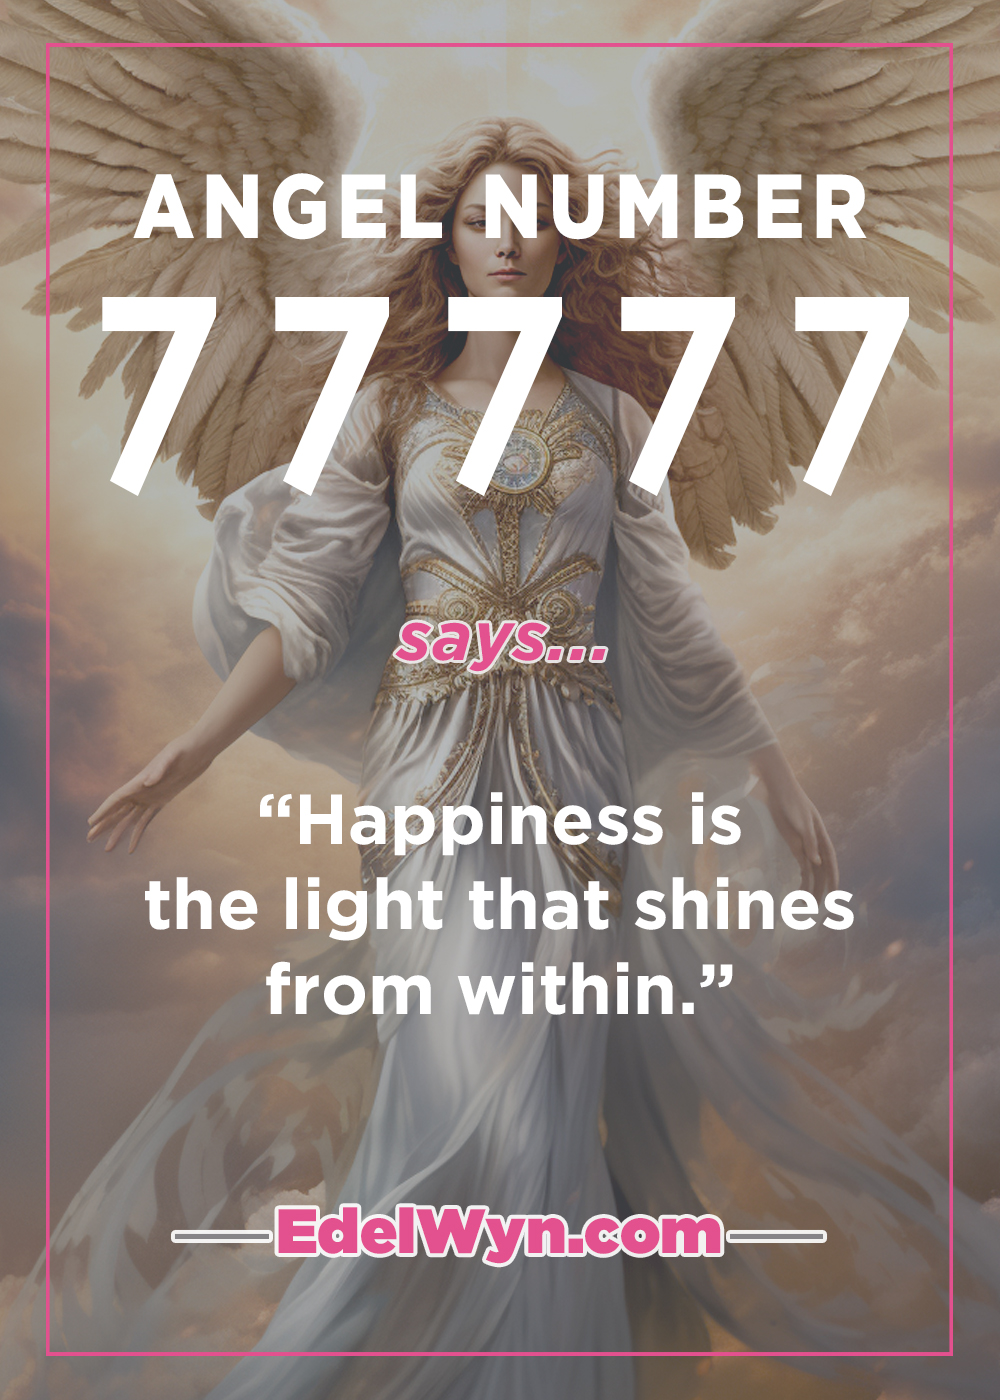 Angel Number 77777 